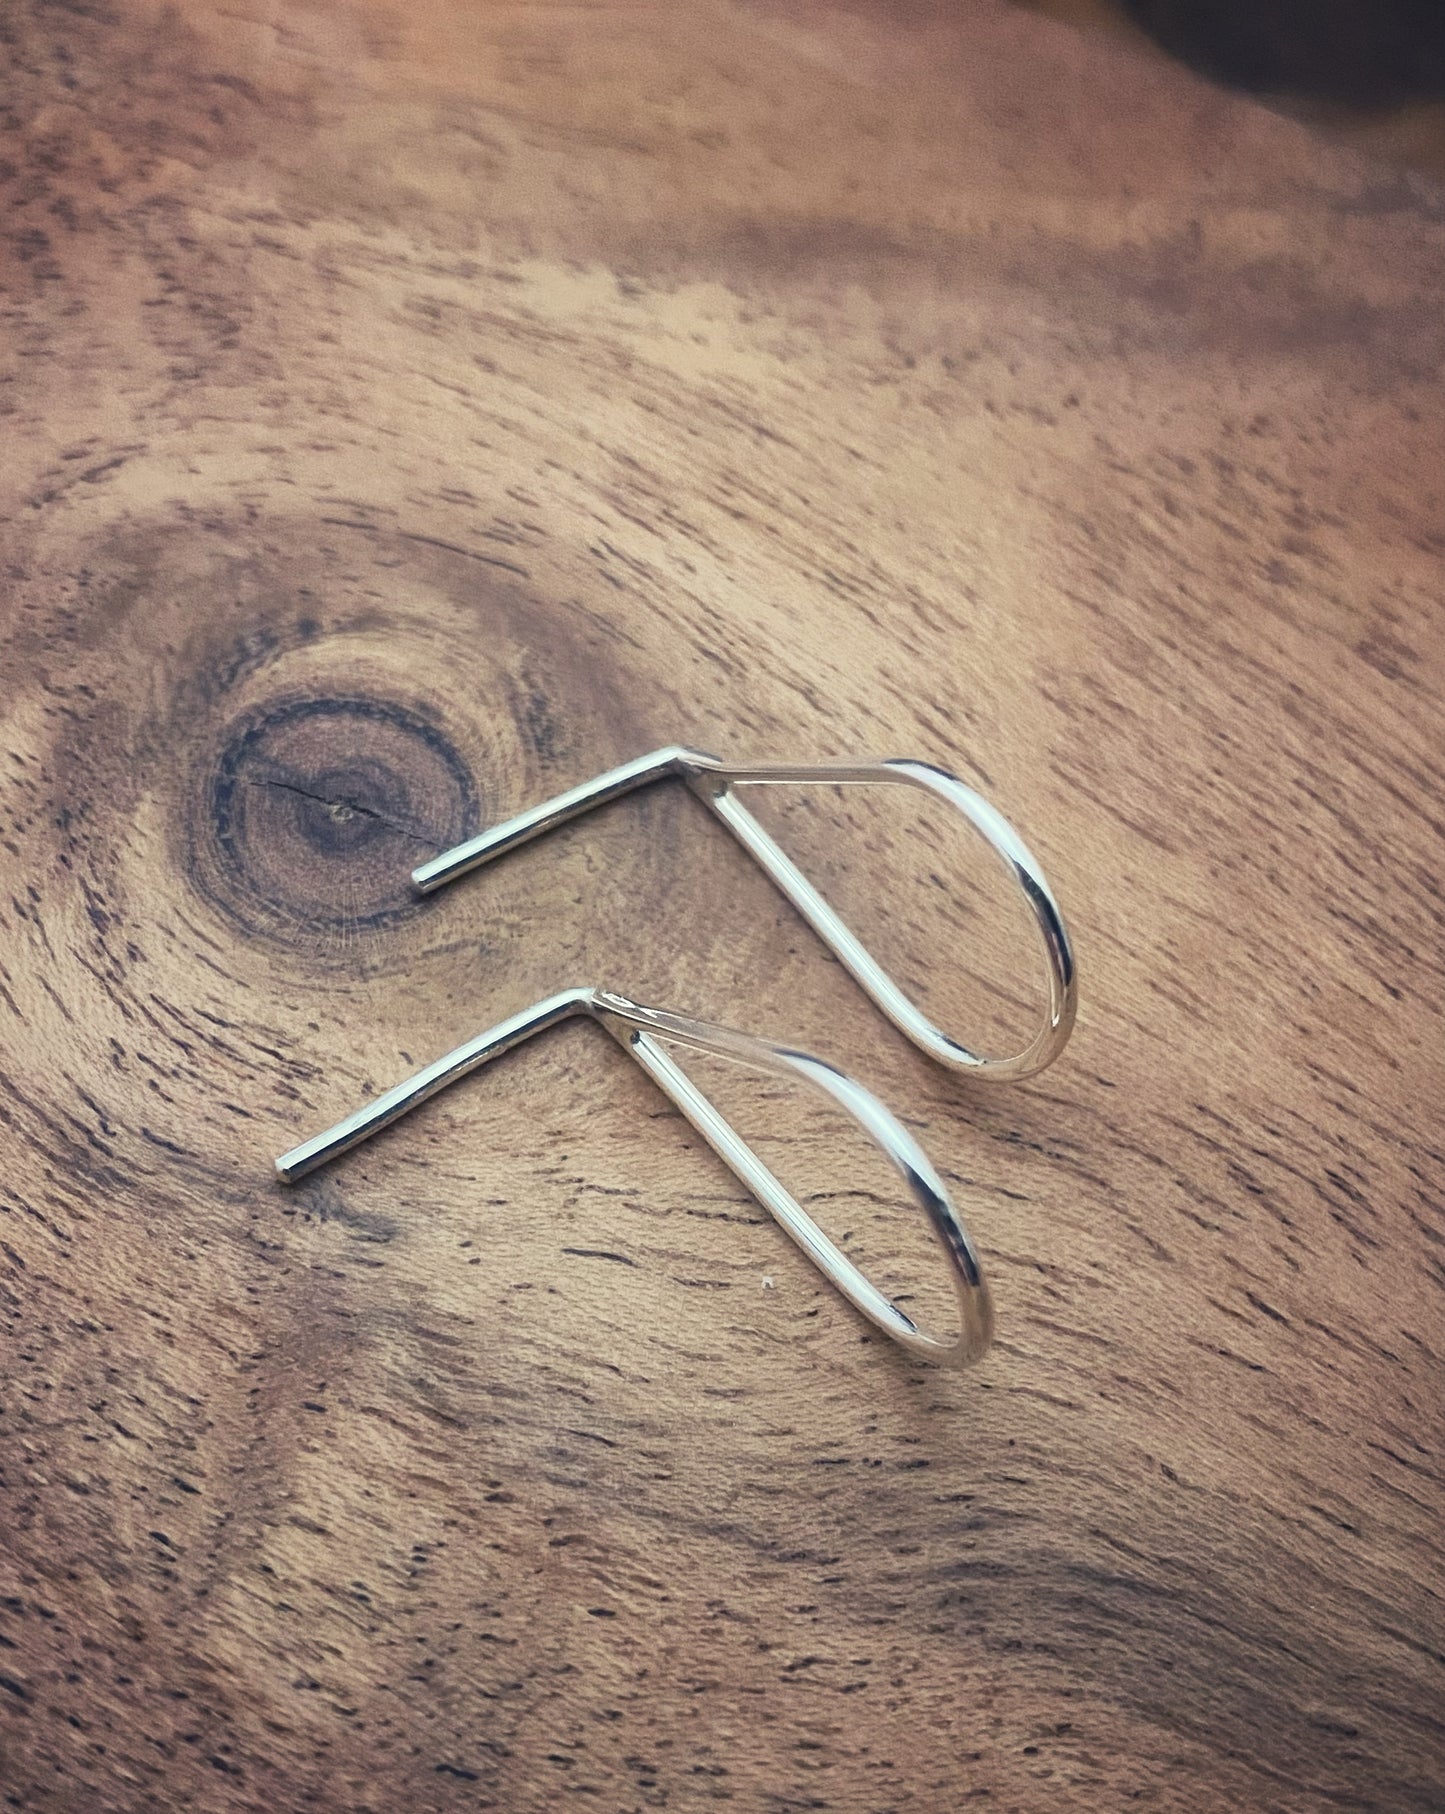 Sterling Silver teardrop post earrings